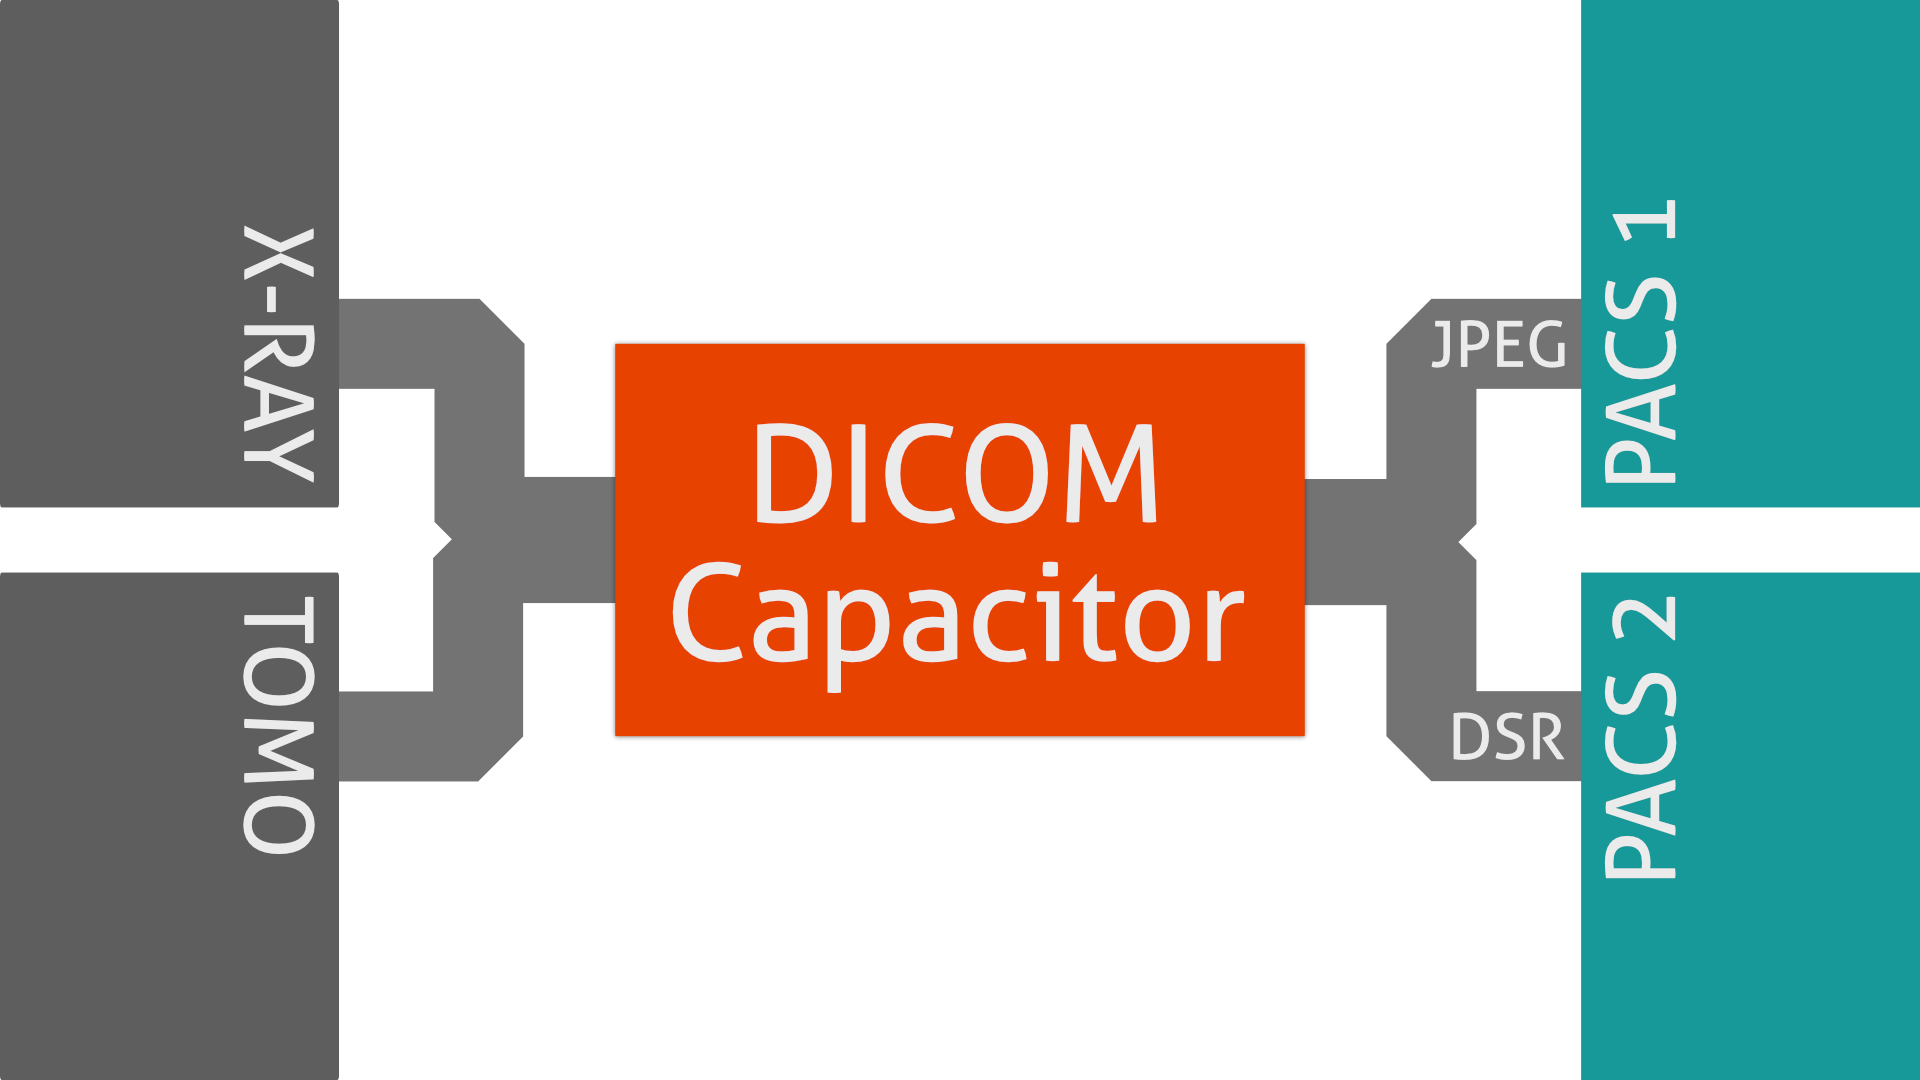 DICOM Capacitor